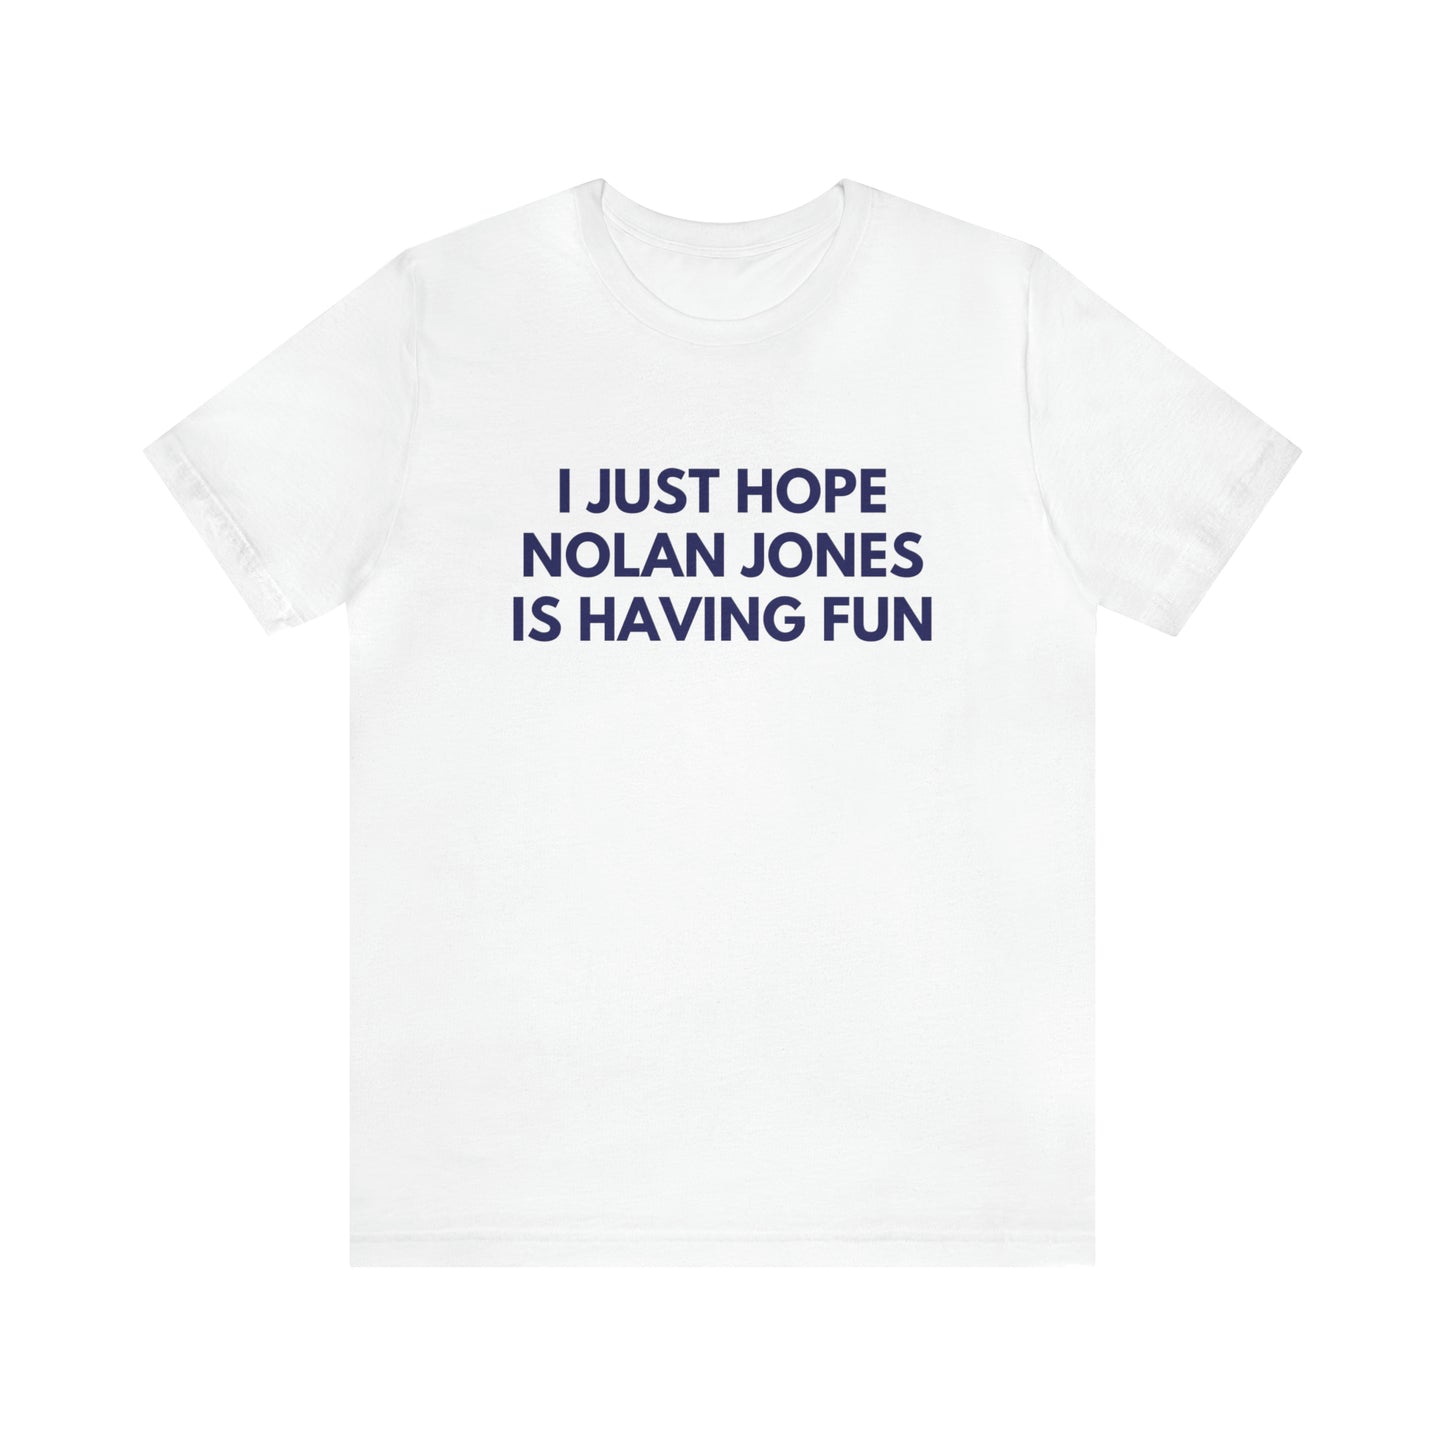 Nolan Jones Having Fun - Unisex T-shirt